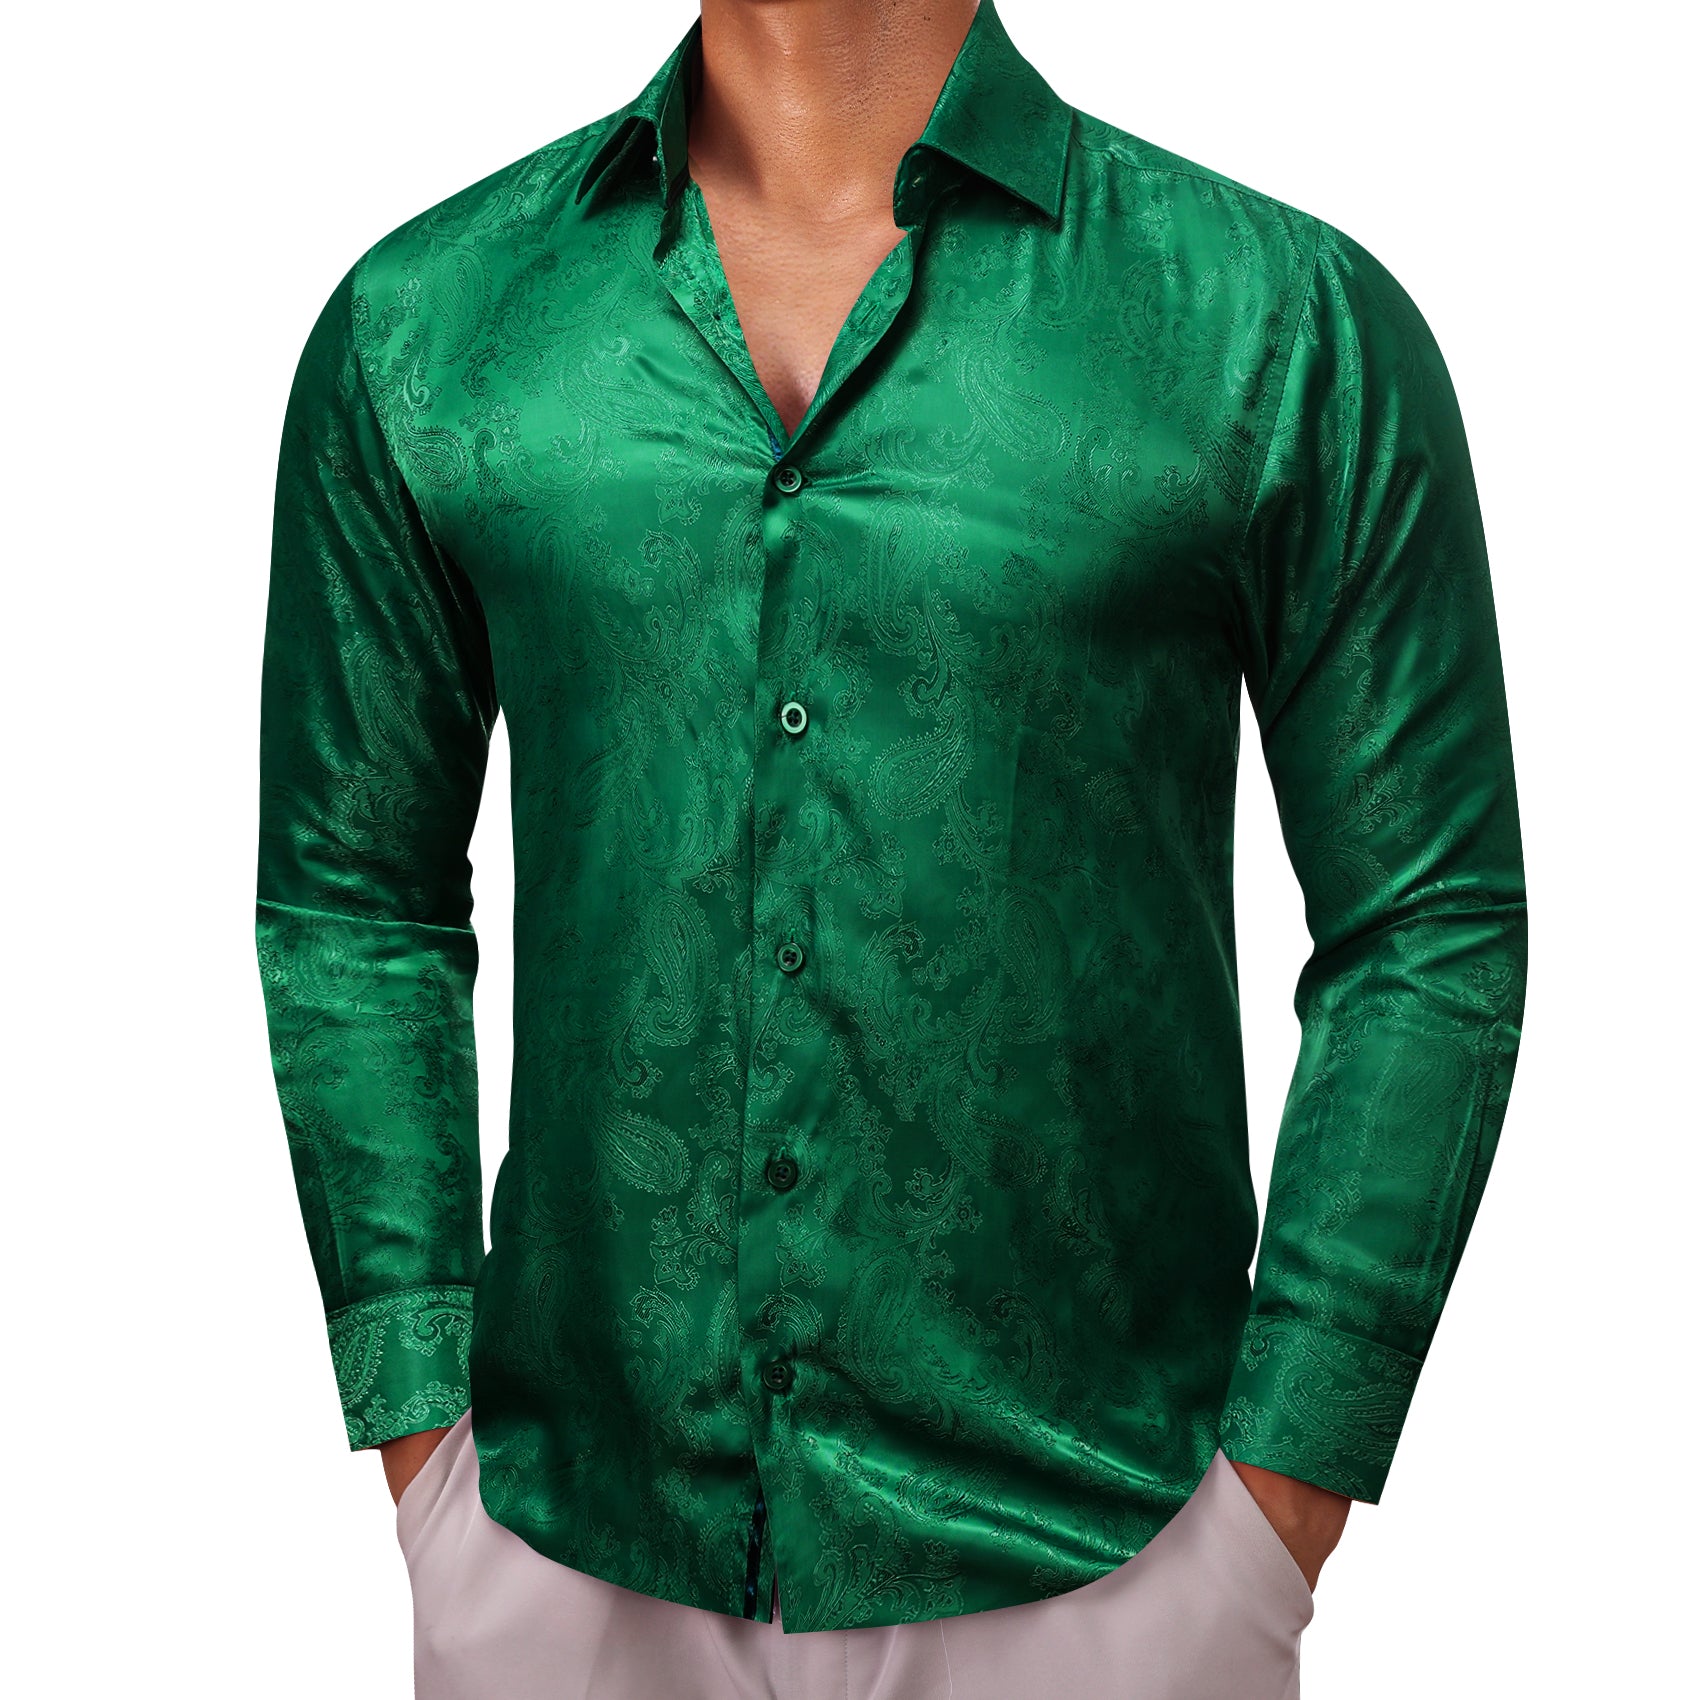 Barry.wang Grass Green Paisley Silk Men's Shirt